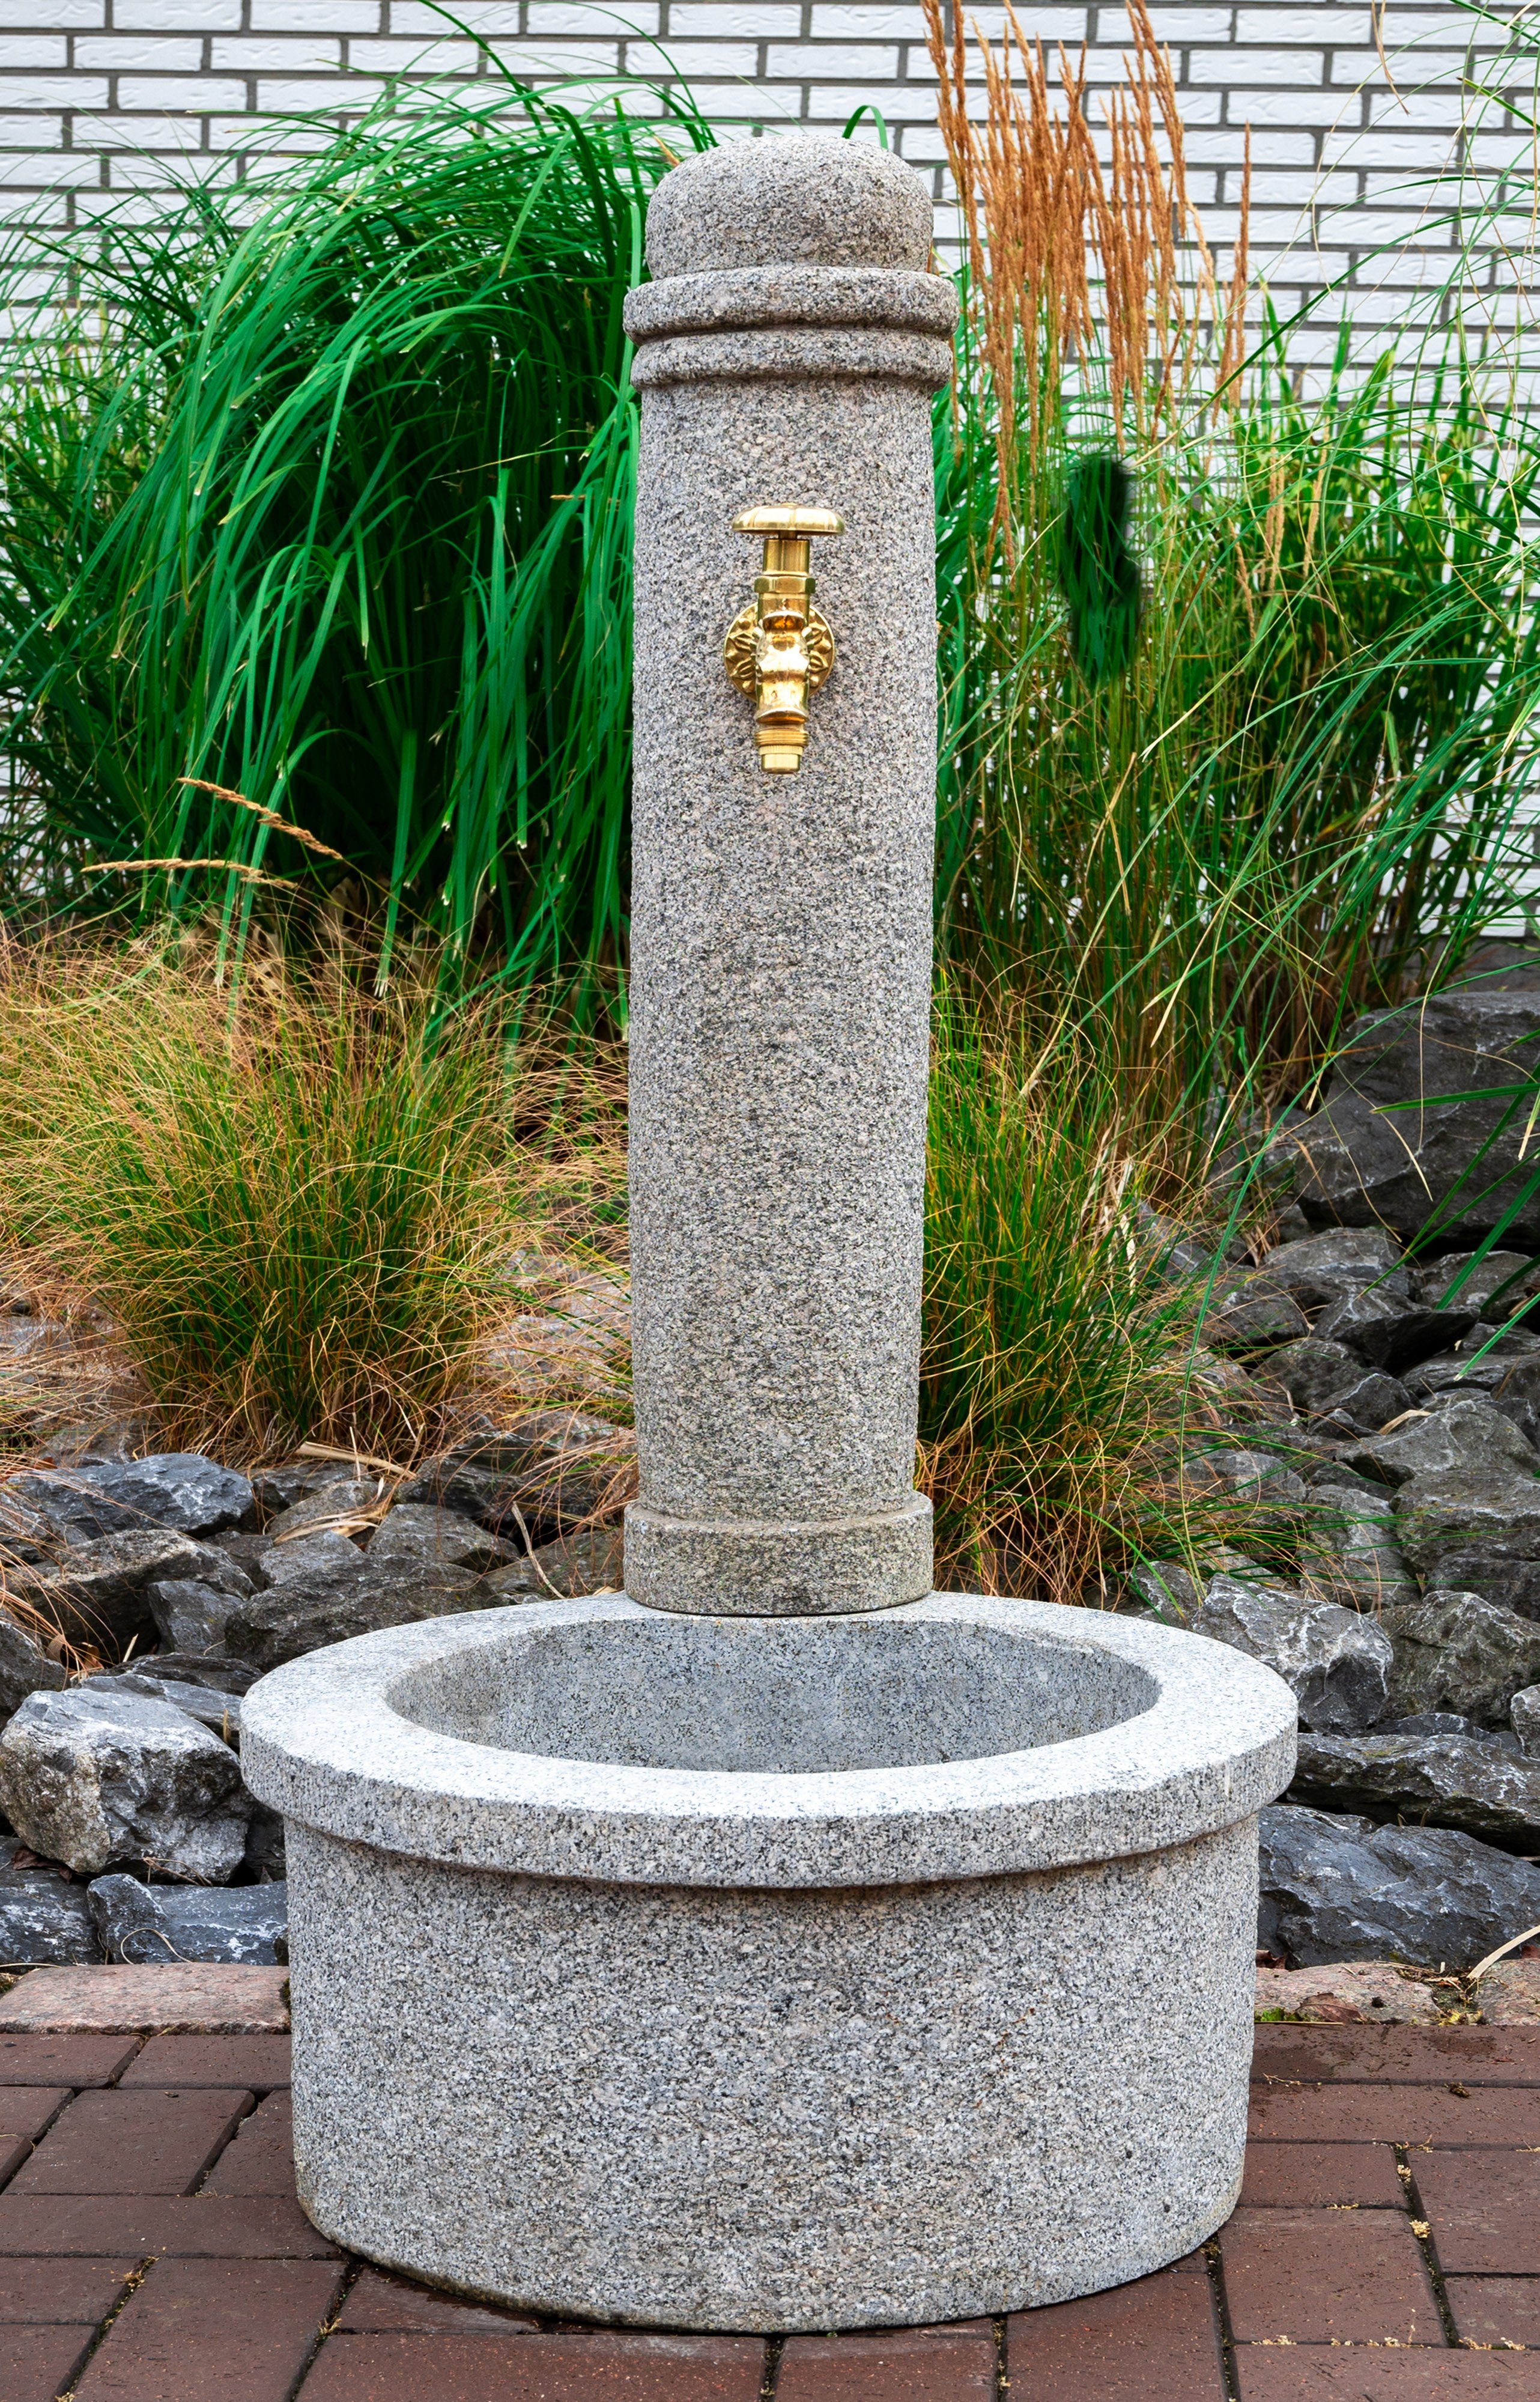 IDYL Gartenbrunnen Granit Gartenbrunnen, Granit – ein Naturprodukt – sehr robust – witterungsbeständig gegen Frost, Regen und UV-Strahlung. | Brunnen